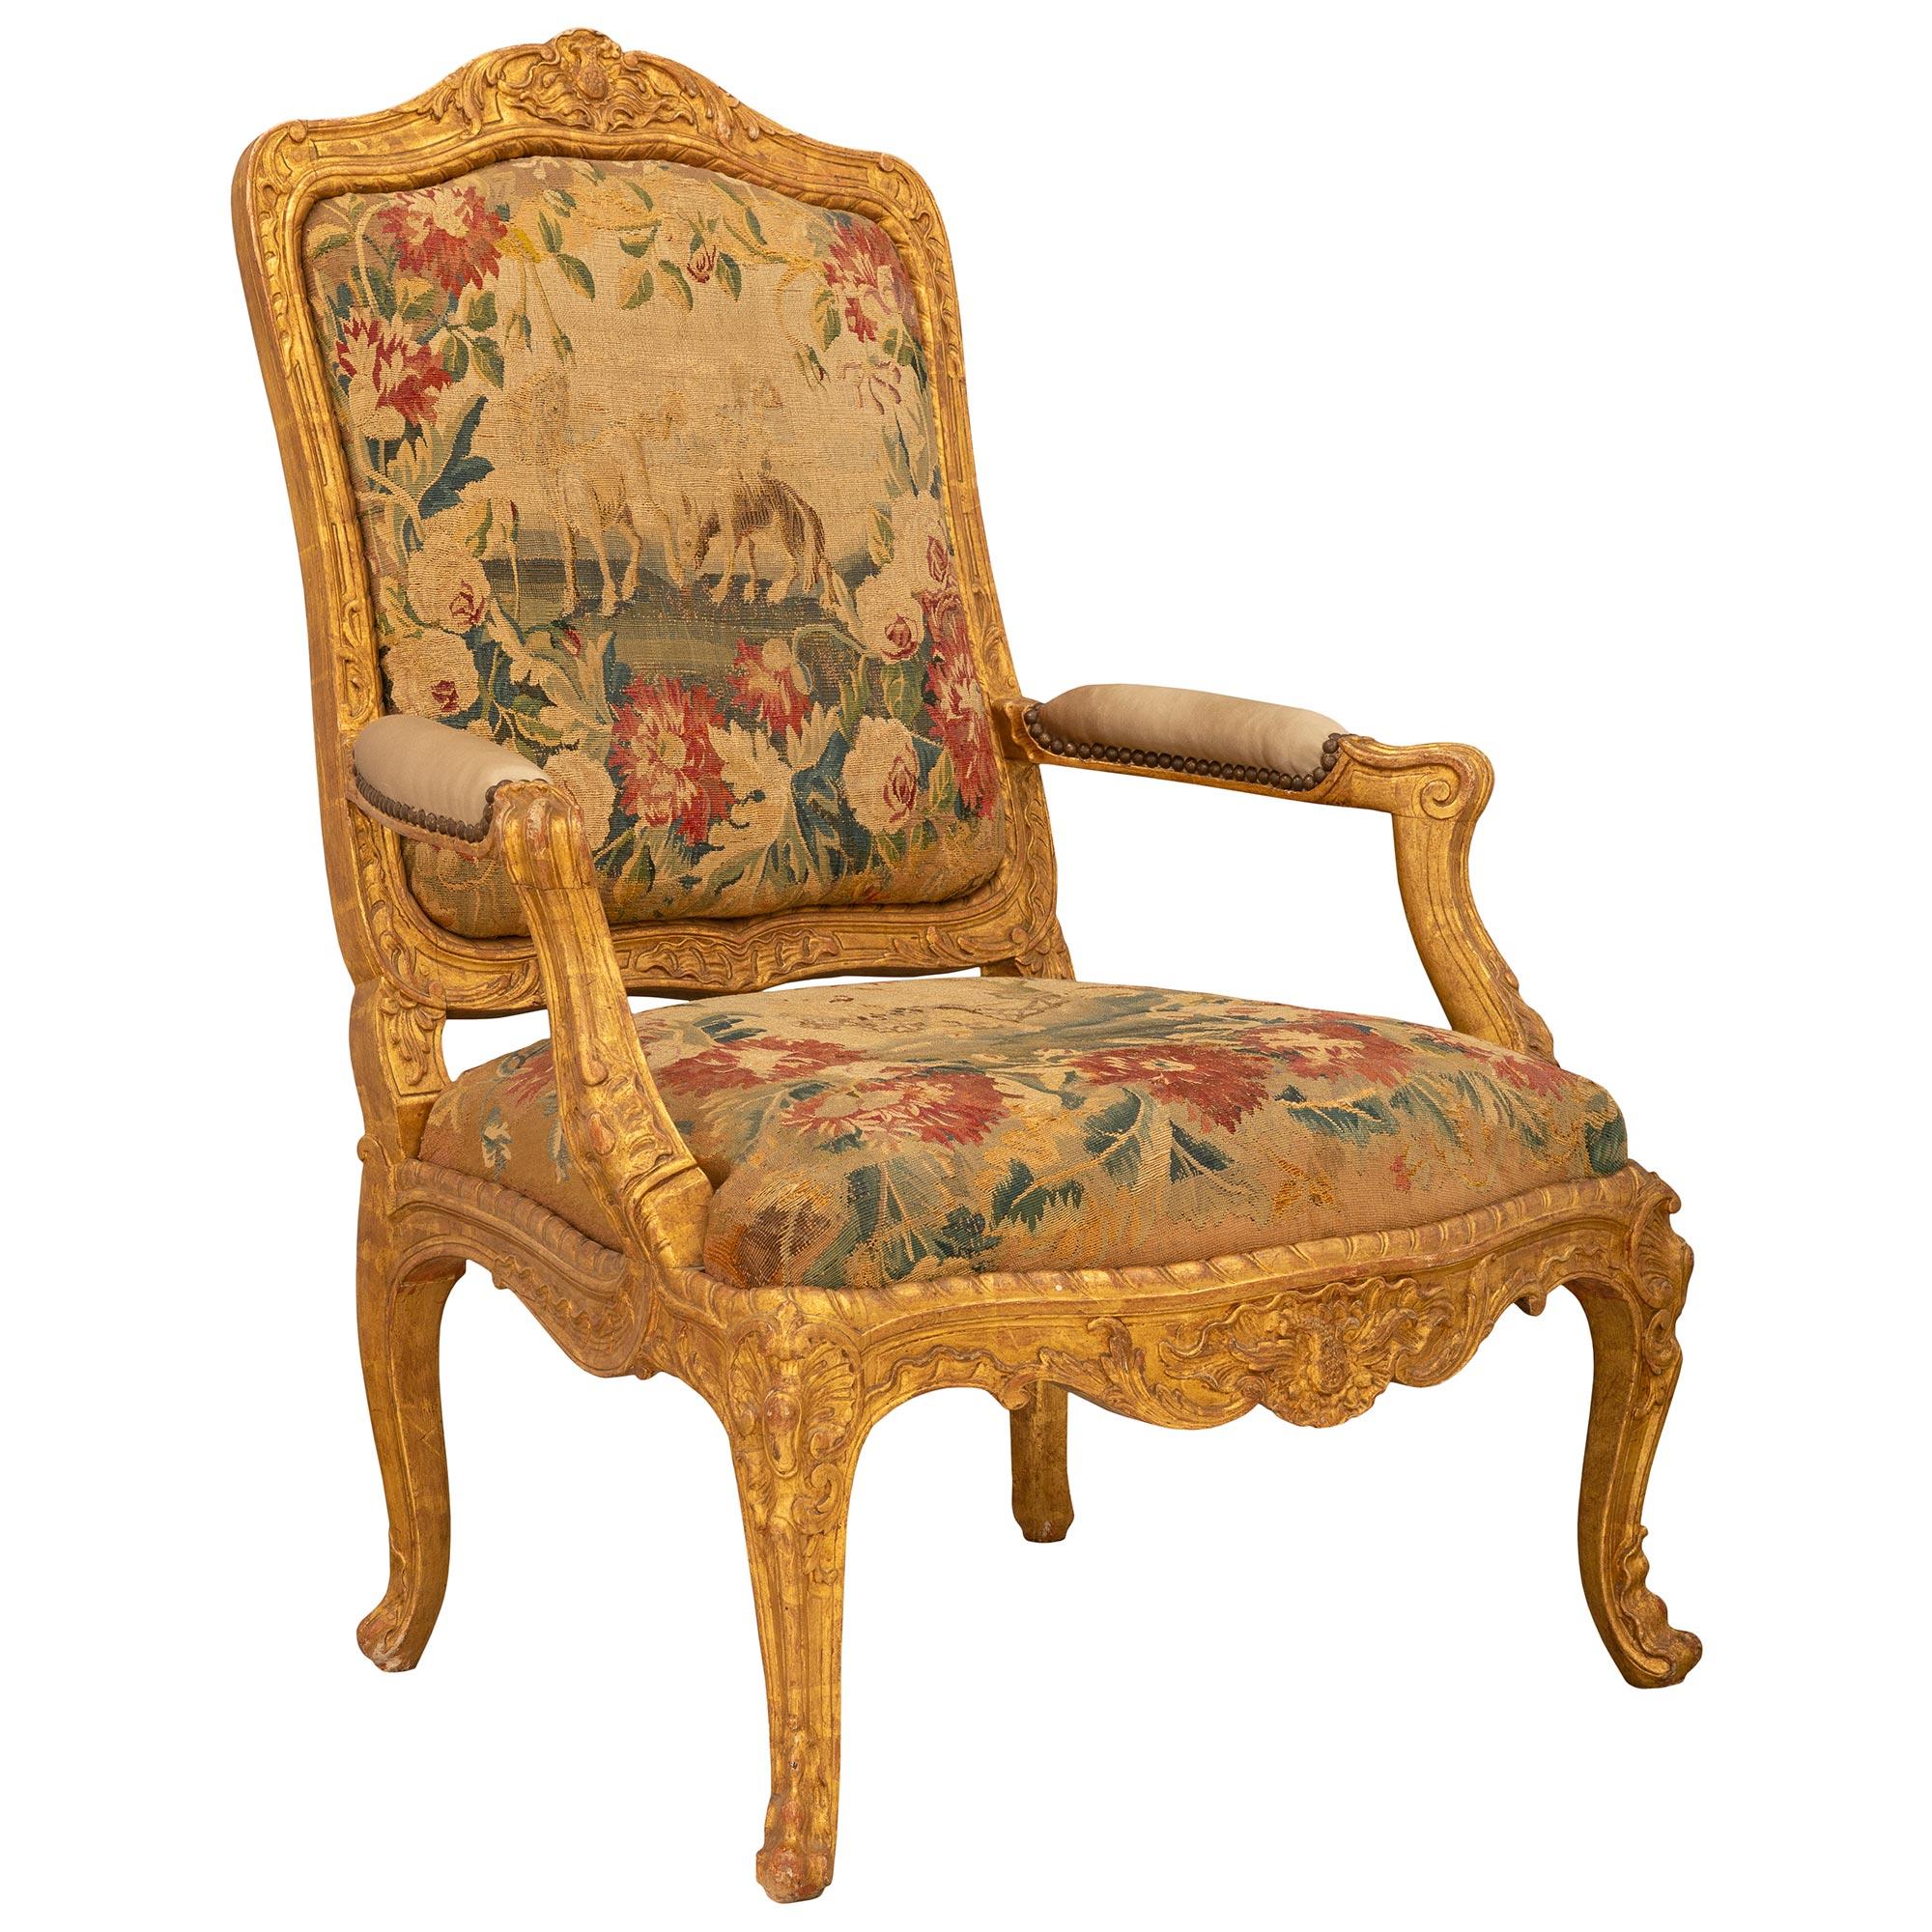 Un bel ensemble de haute qualité de quatre fauteuils Louis XV en bois doré et tapisserie du début du 19ème siècle. Chaque fauteuil est surélevé par d'élégants pieds cabriole avec de jolis motifs feuillagés sculptés et des réserves de coquillages